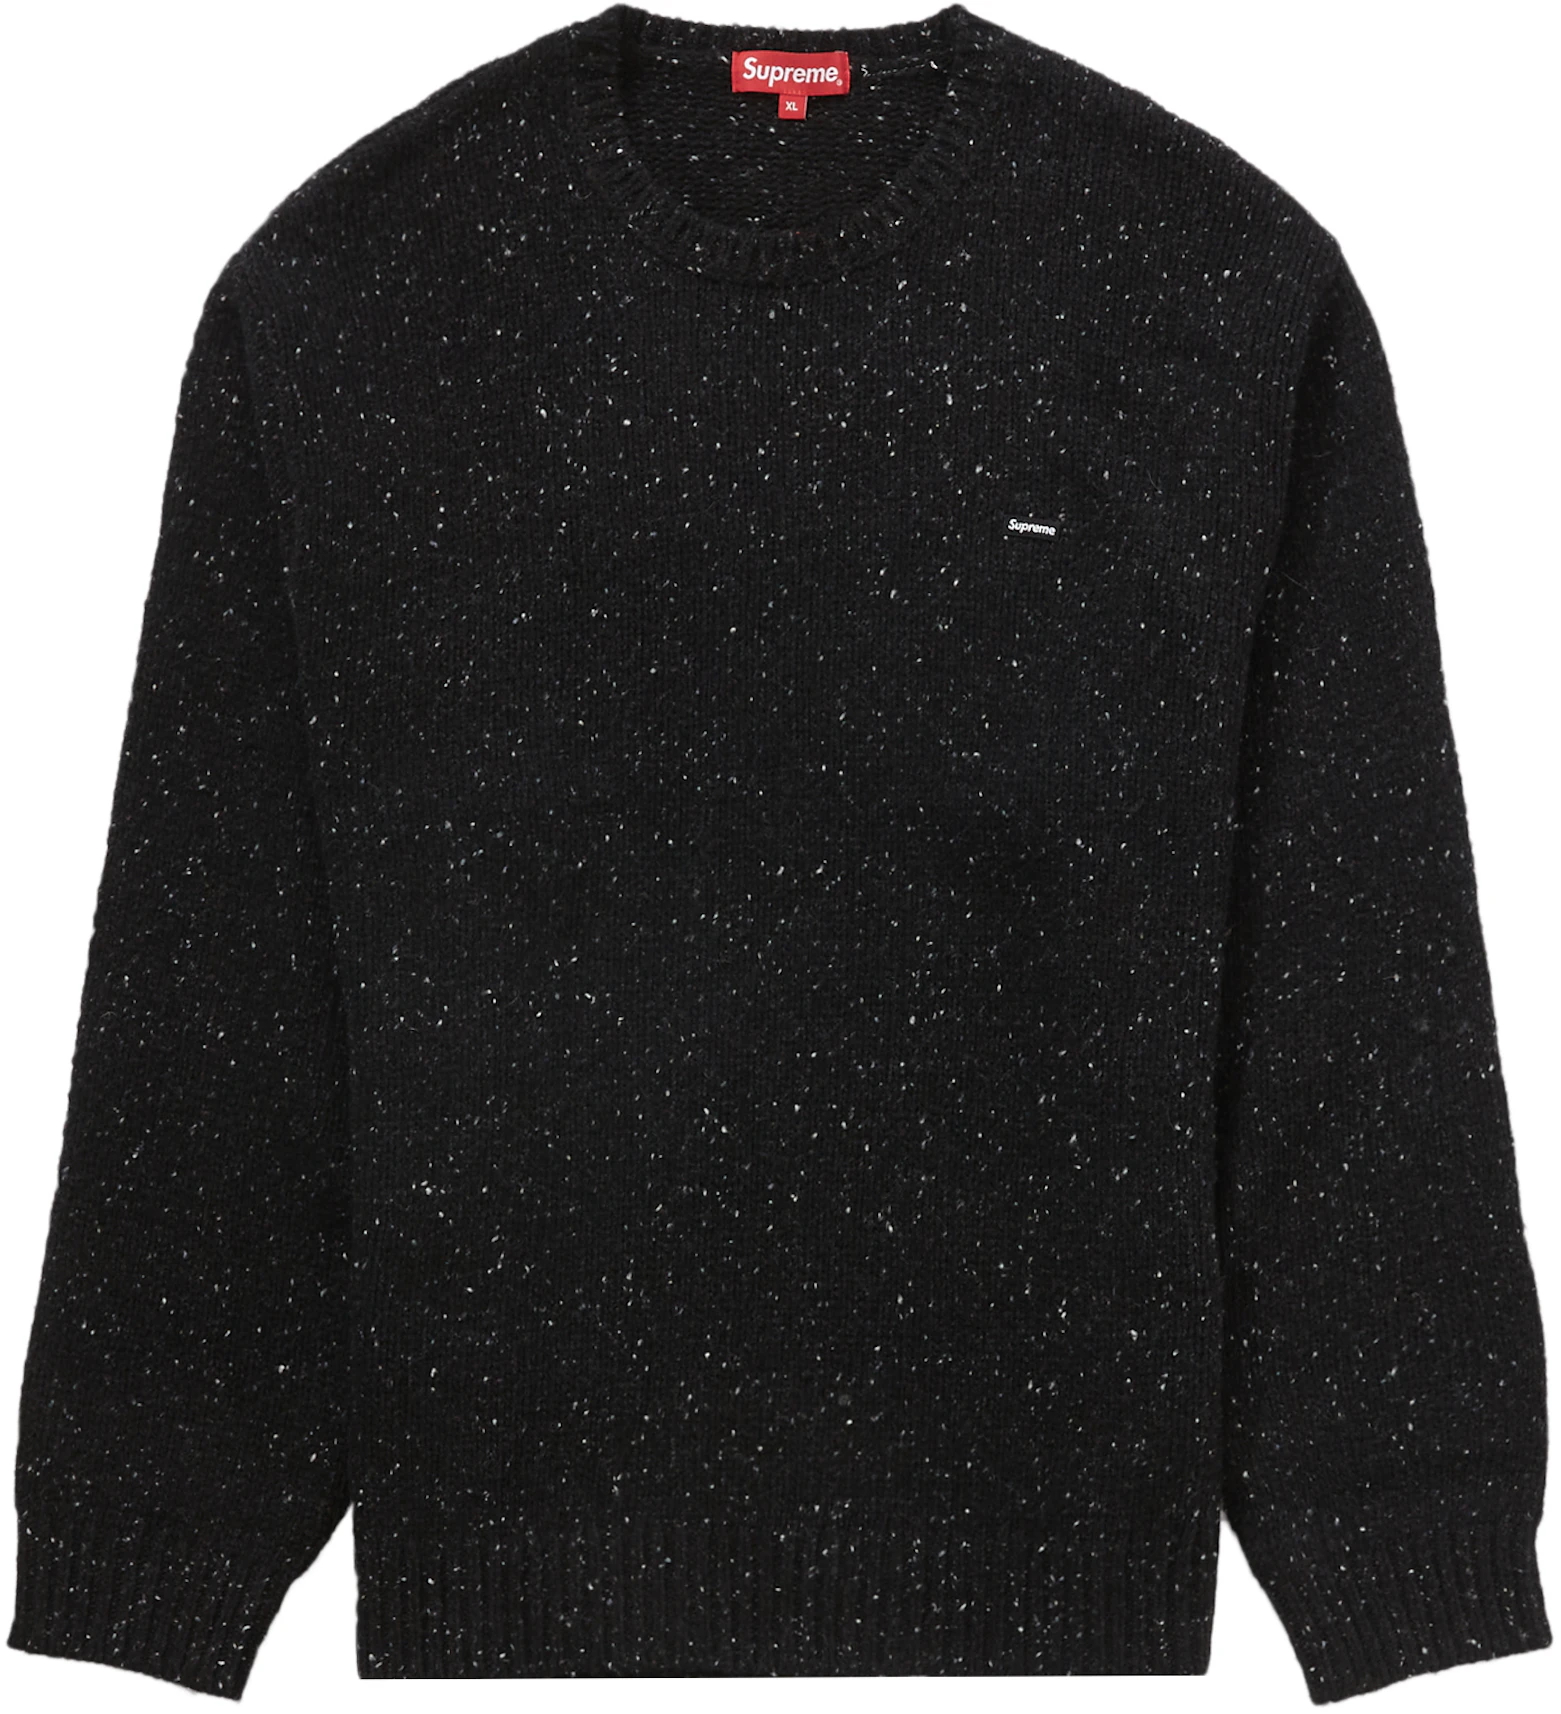 Supreme Small Box Speckle Sweater Black - FW22 - MX